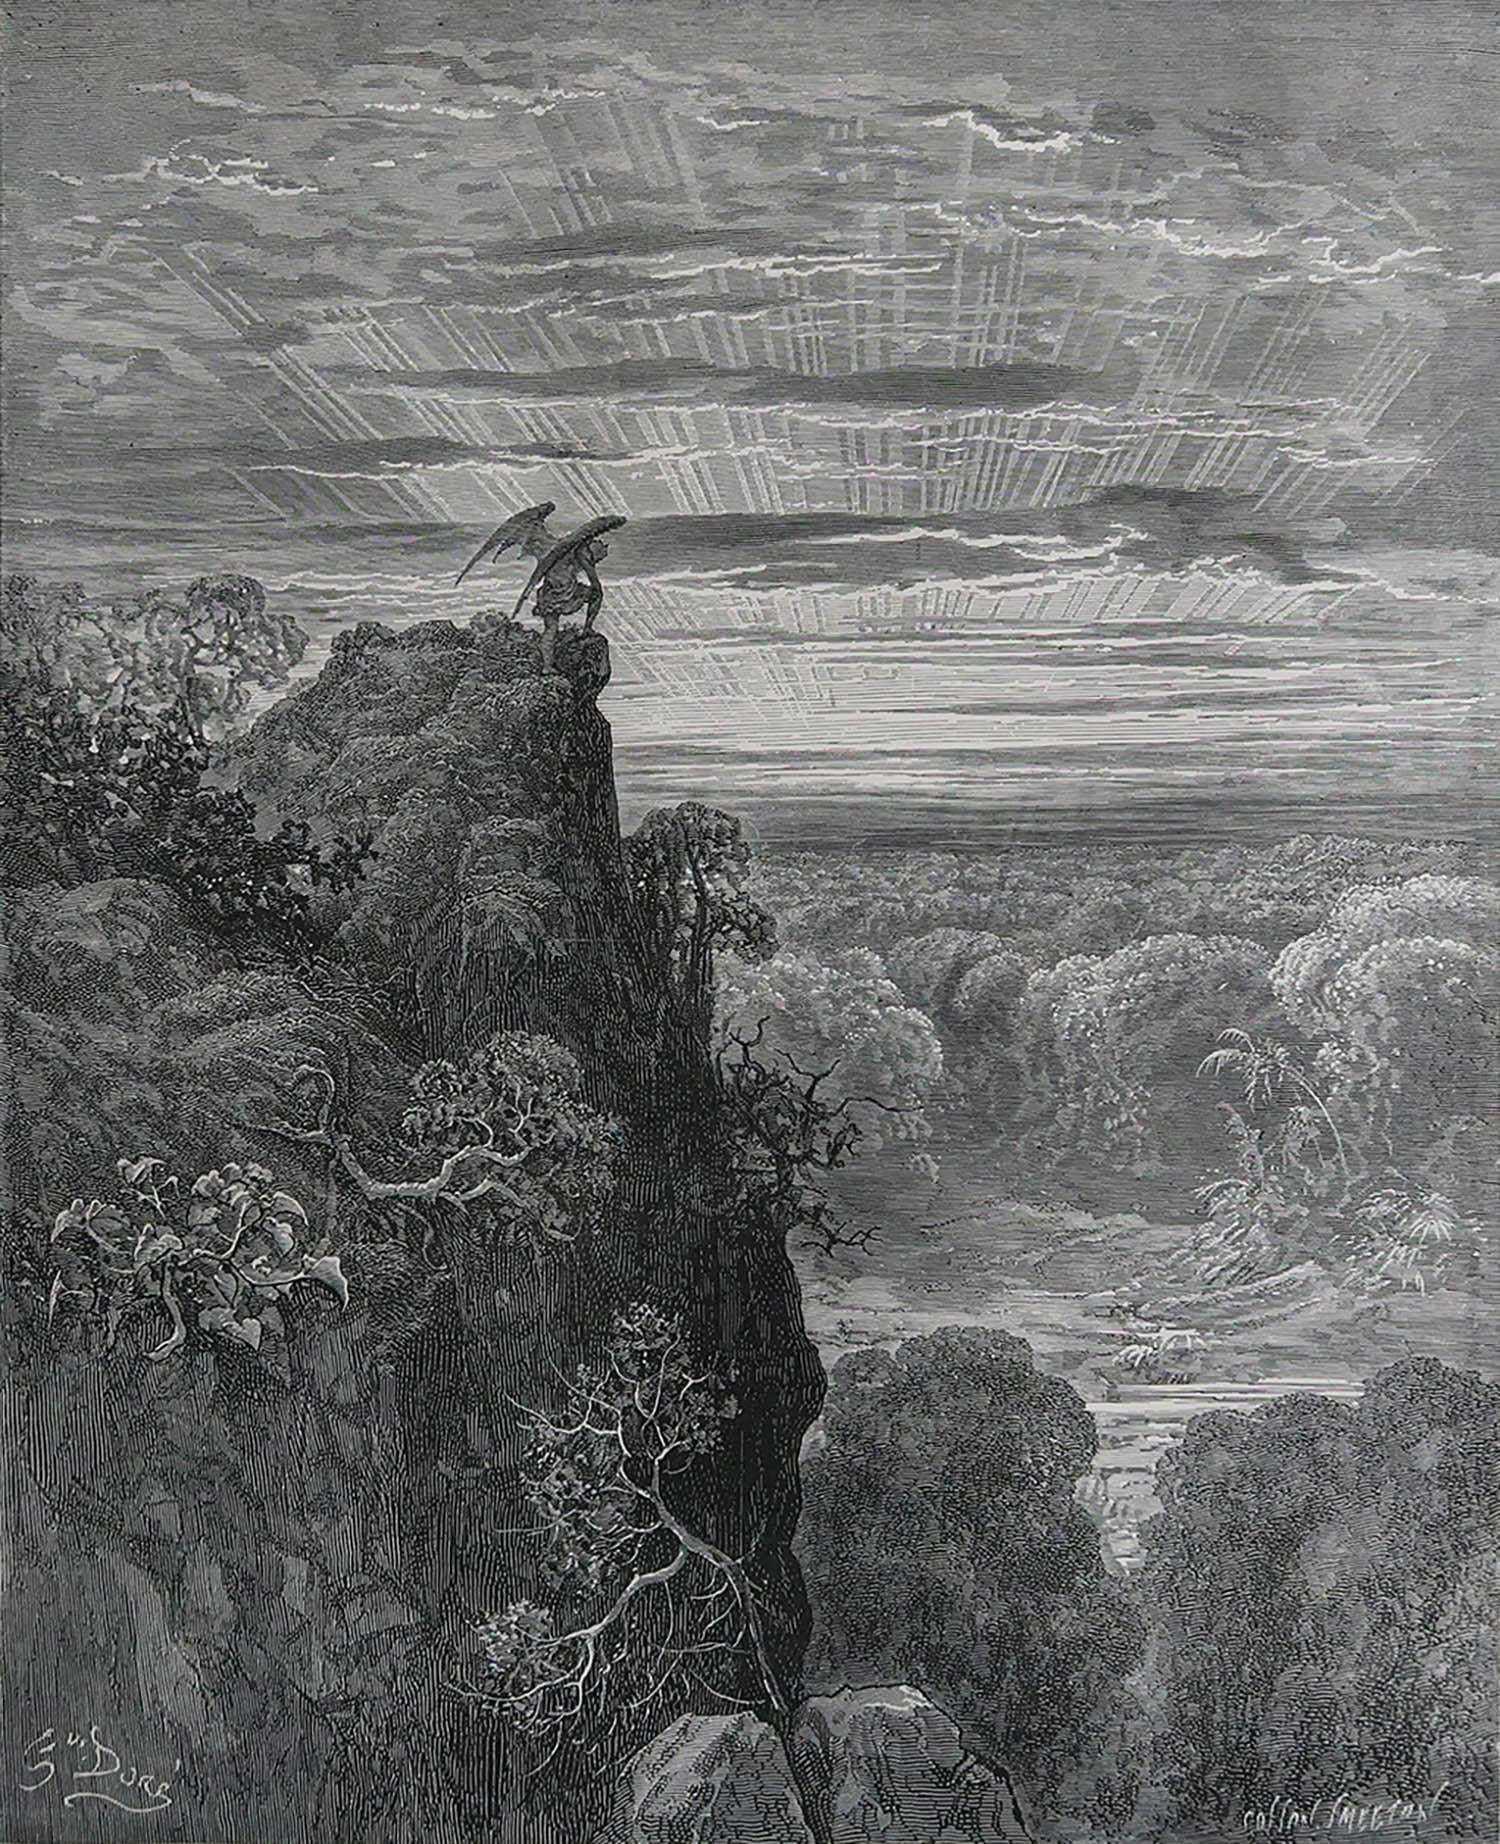 Sensationelles Bild von Gustave Dore

Ursprünglich eine Illustration für John Miltons 